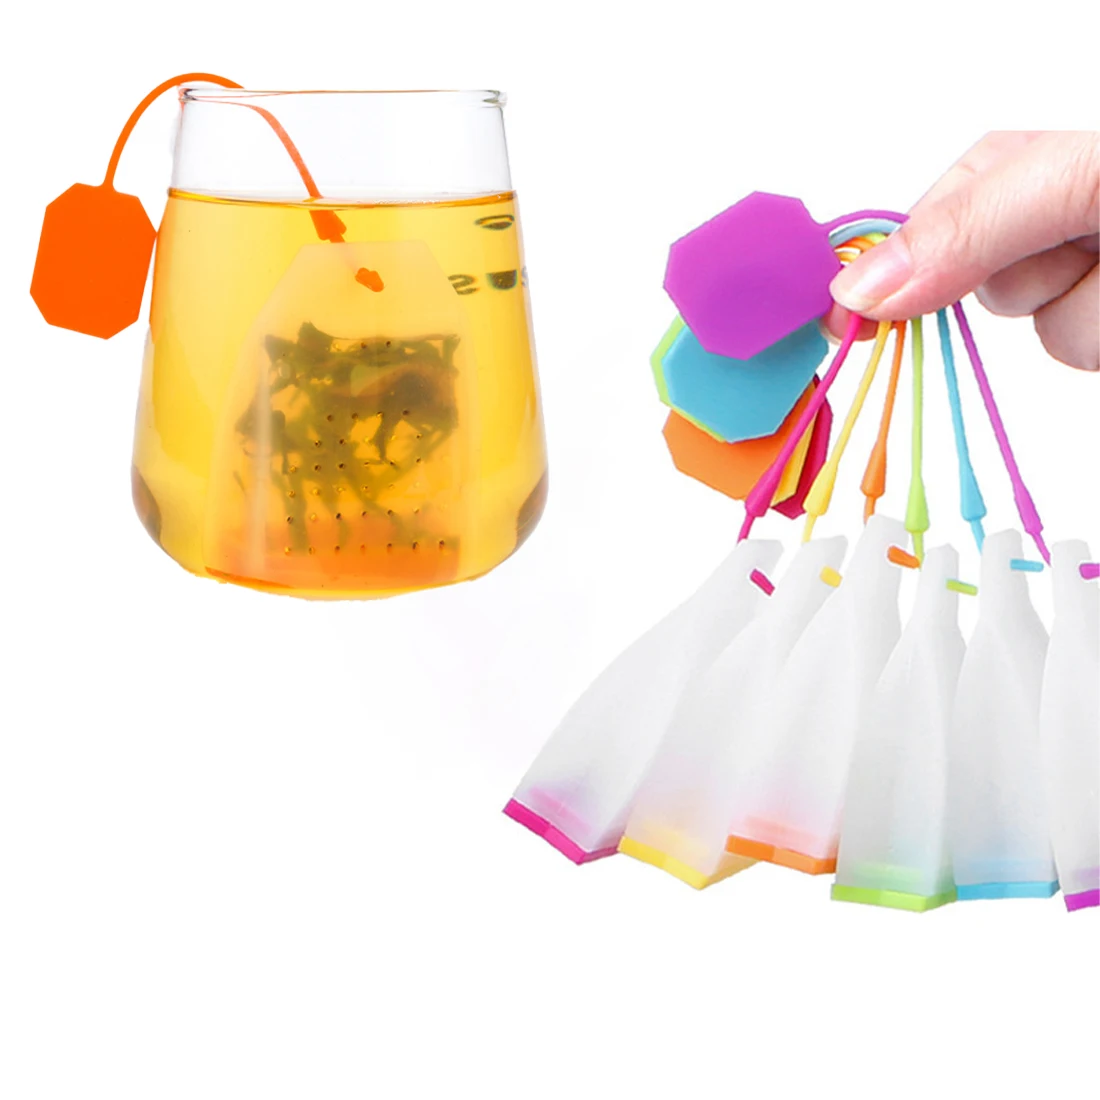 

Silicone Tea Infuser Bag Reusable Safe Loose Leaf Tea Bags Strainer Filter For Tea Drinker Utensils Random Color